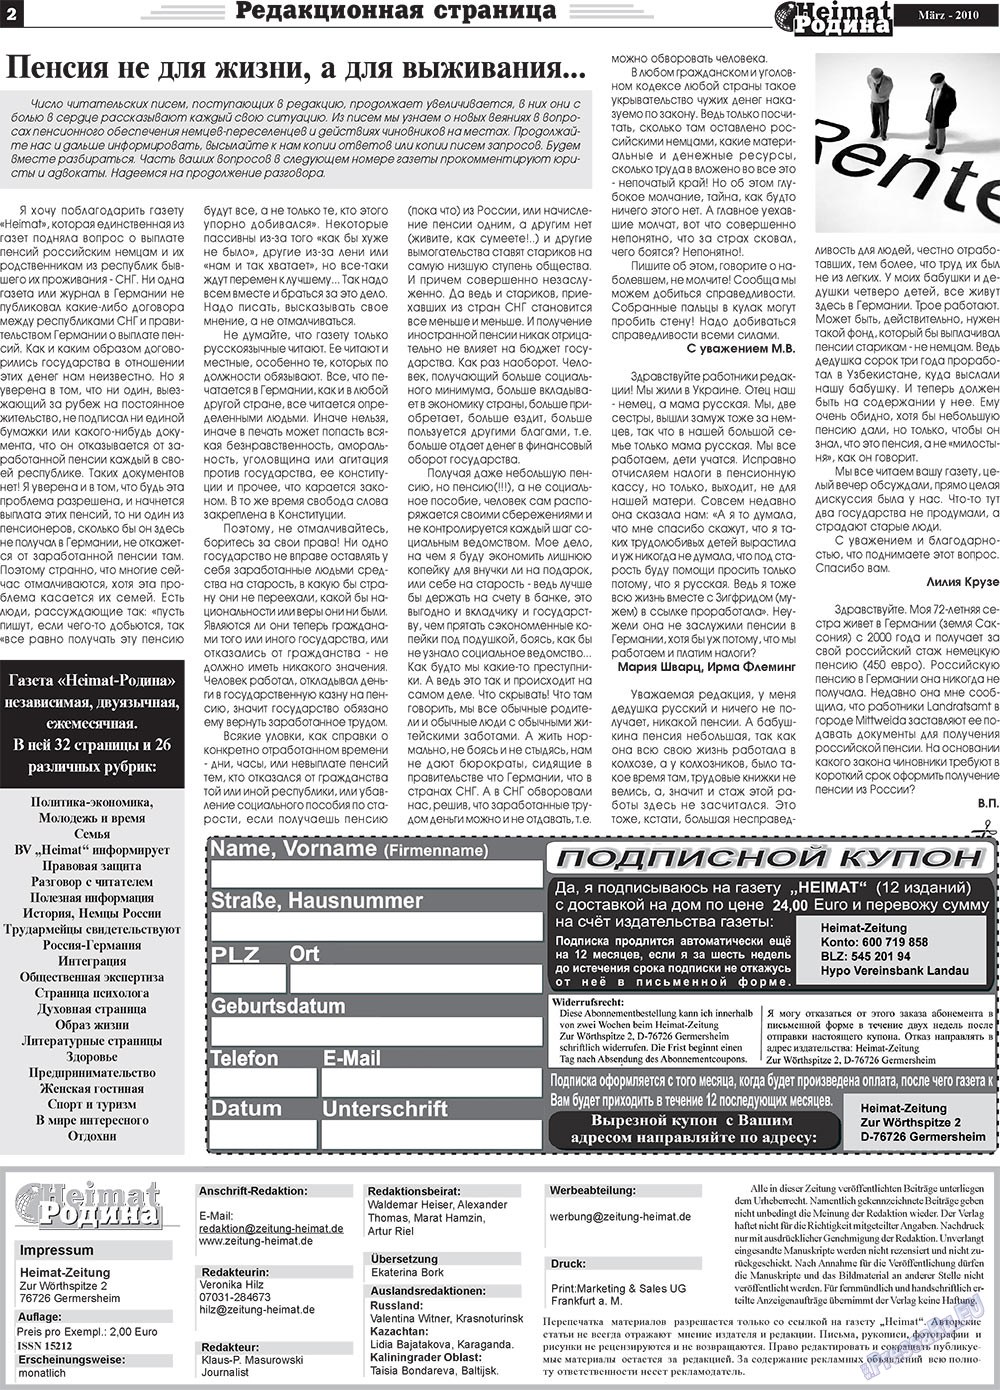 Heimat-Родина (газета). 2010 год, номер 3, стр. 2